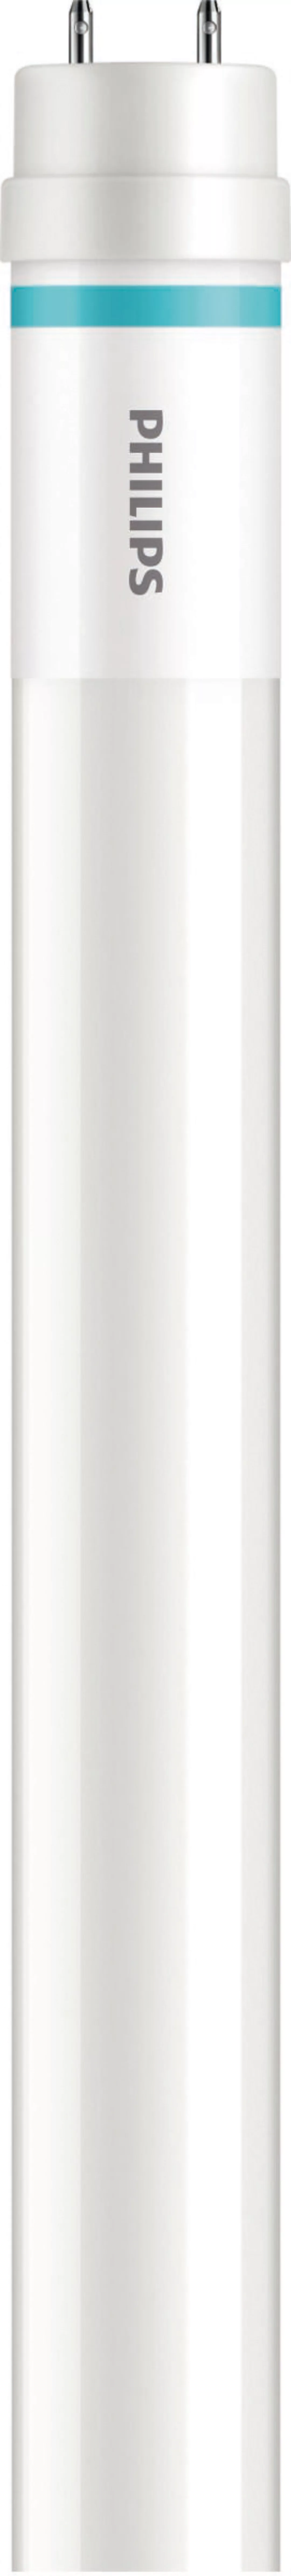 Philips Lighting LED-Tube T8 f. KVG/VVG G13, 865, 1200mm MASLEDtube #316843 günstig online kaufen